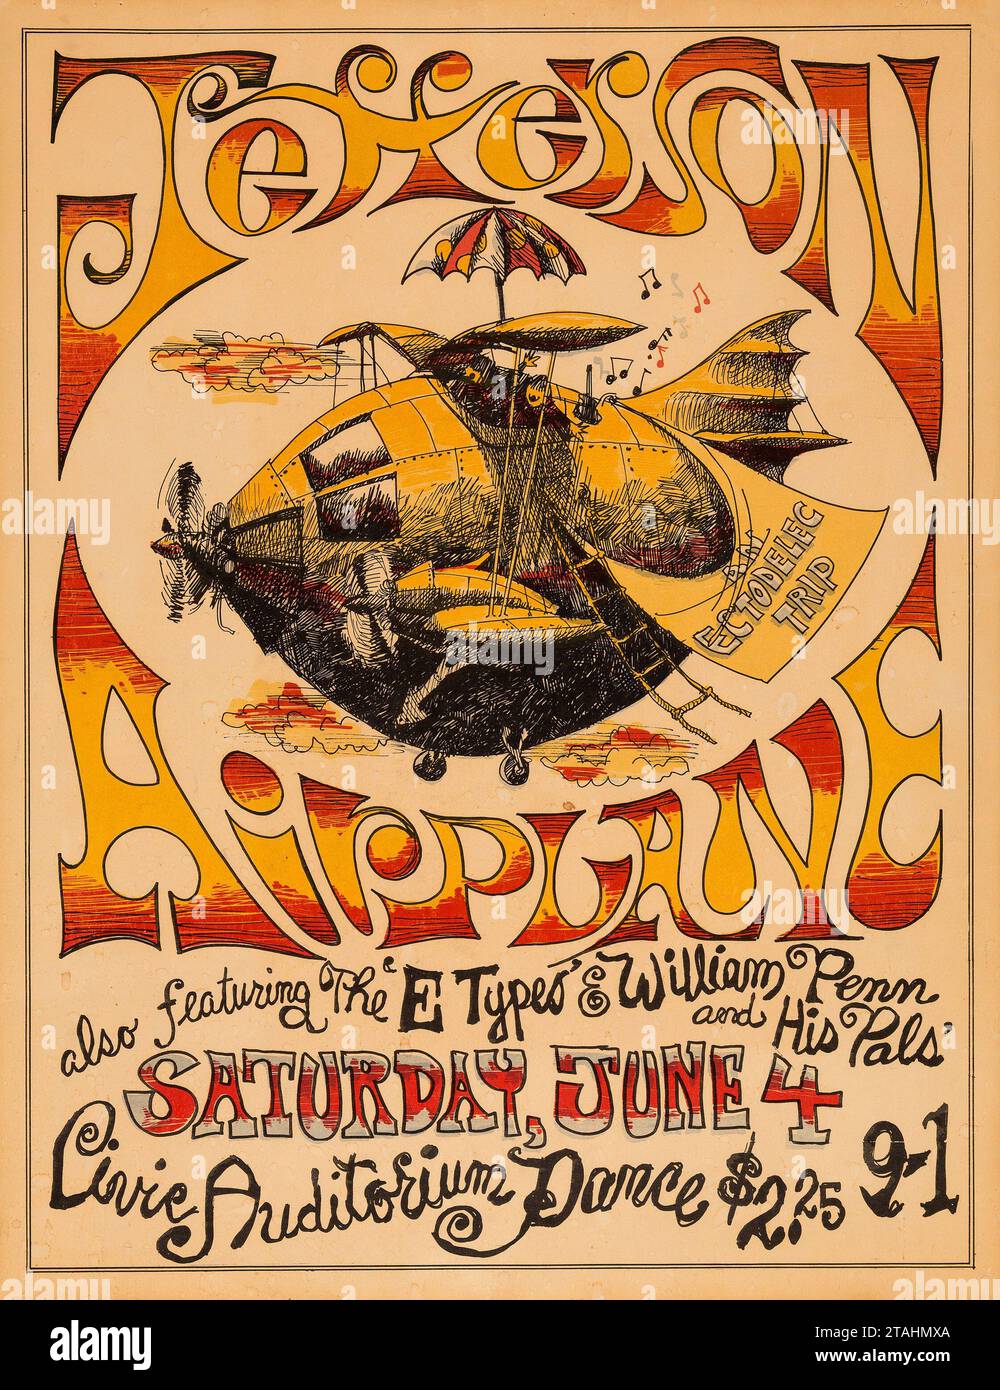 Jefferson Airplane 1966 Vintage Konzert Poster - San Jose Civic Auditorium feat E Types und William Penn und seine Pals Stockfoto